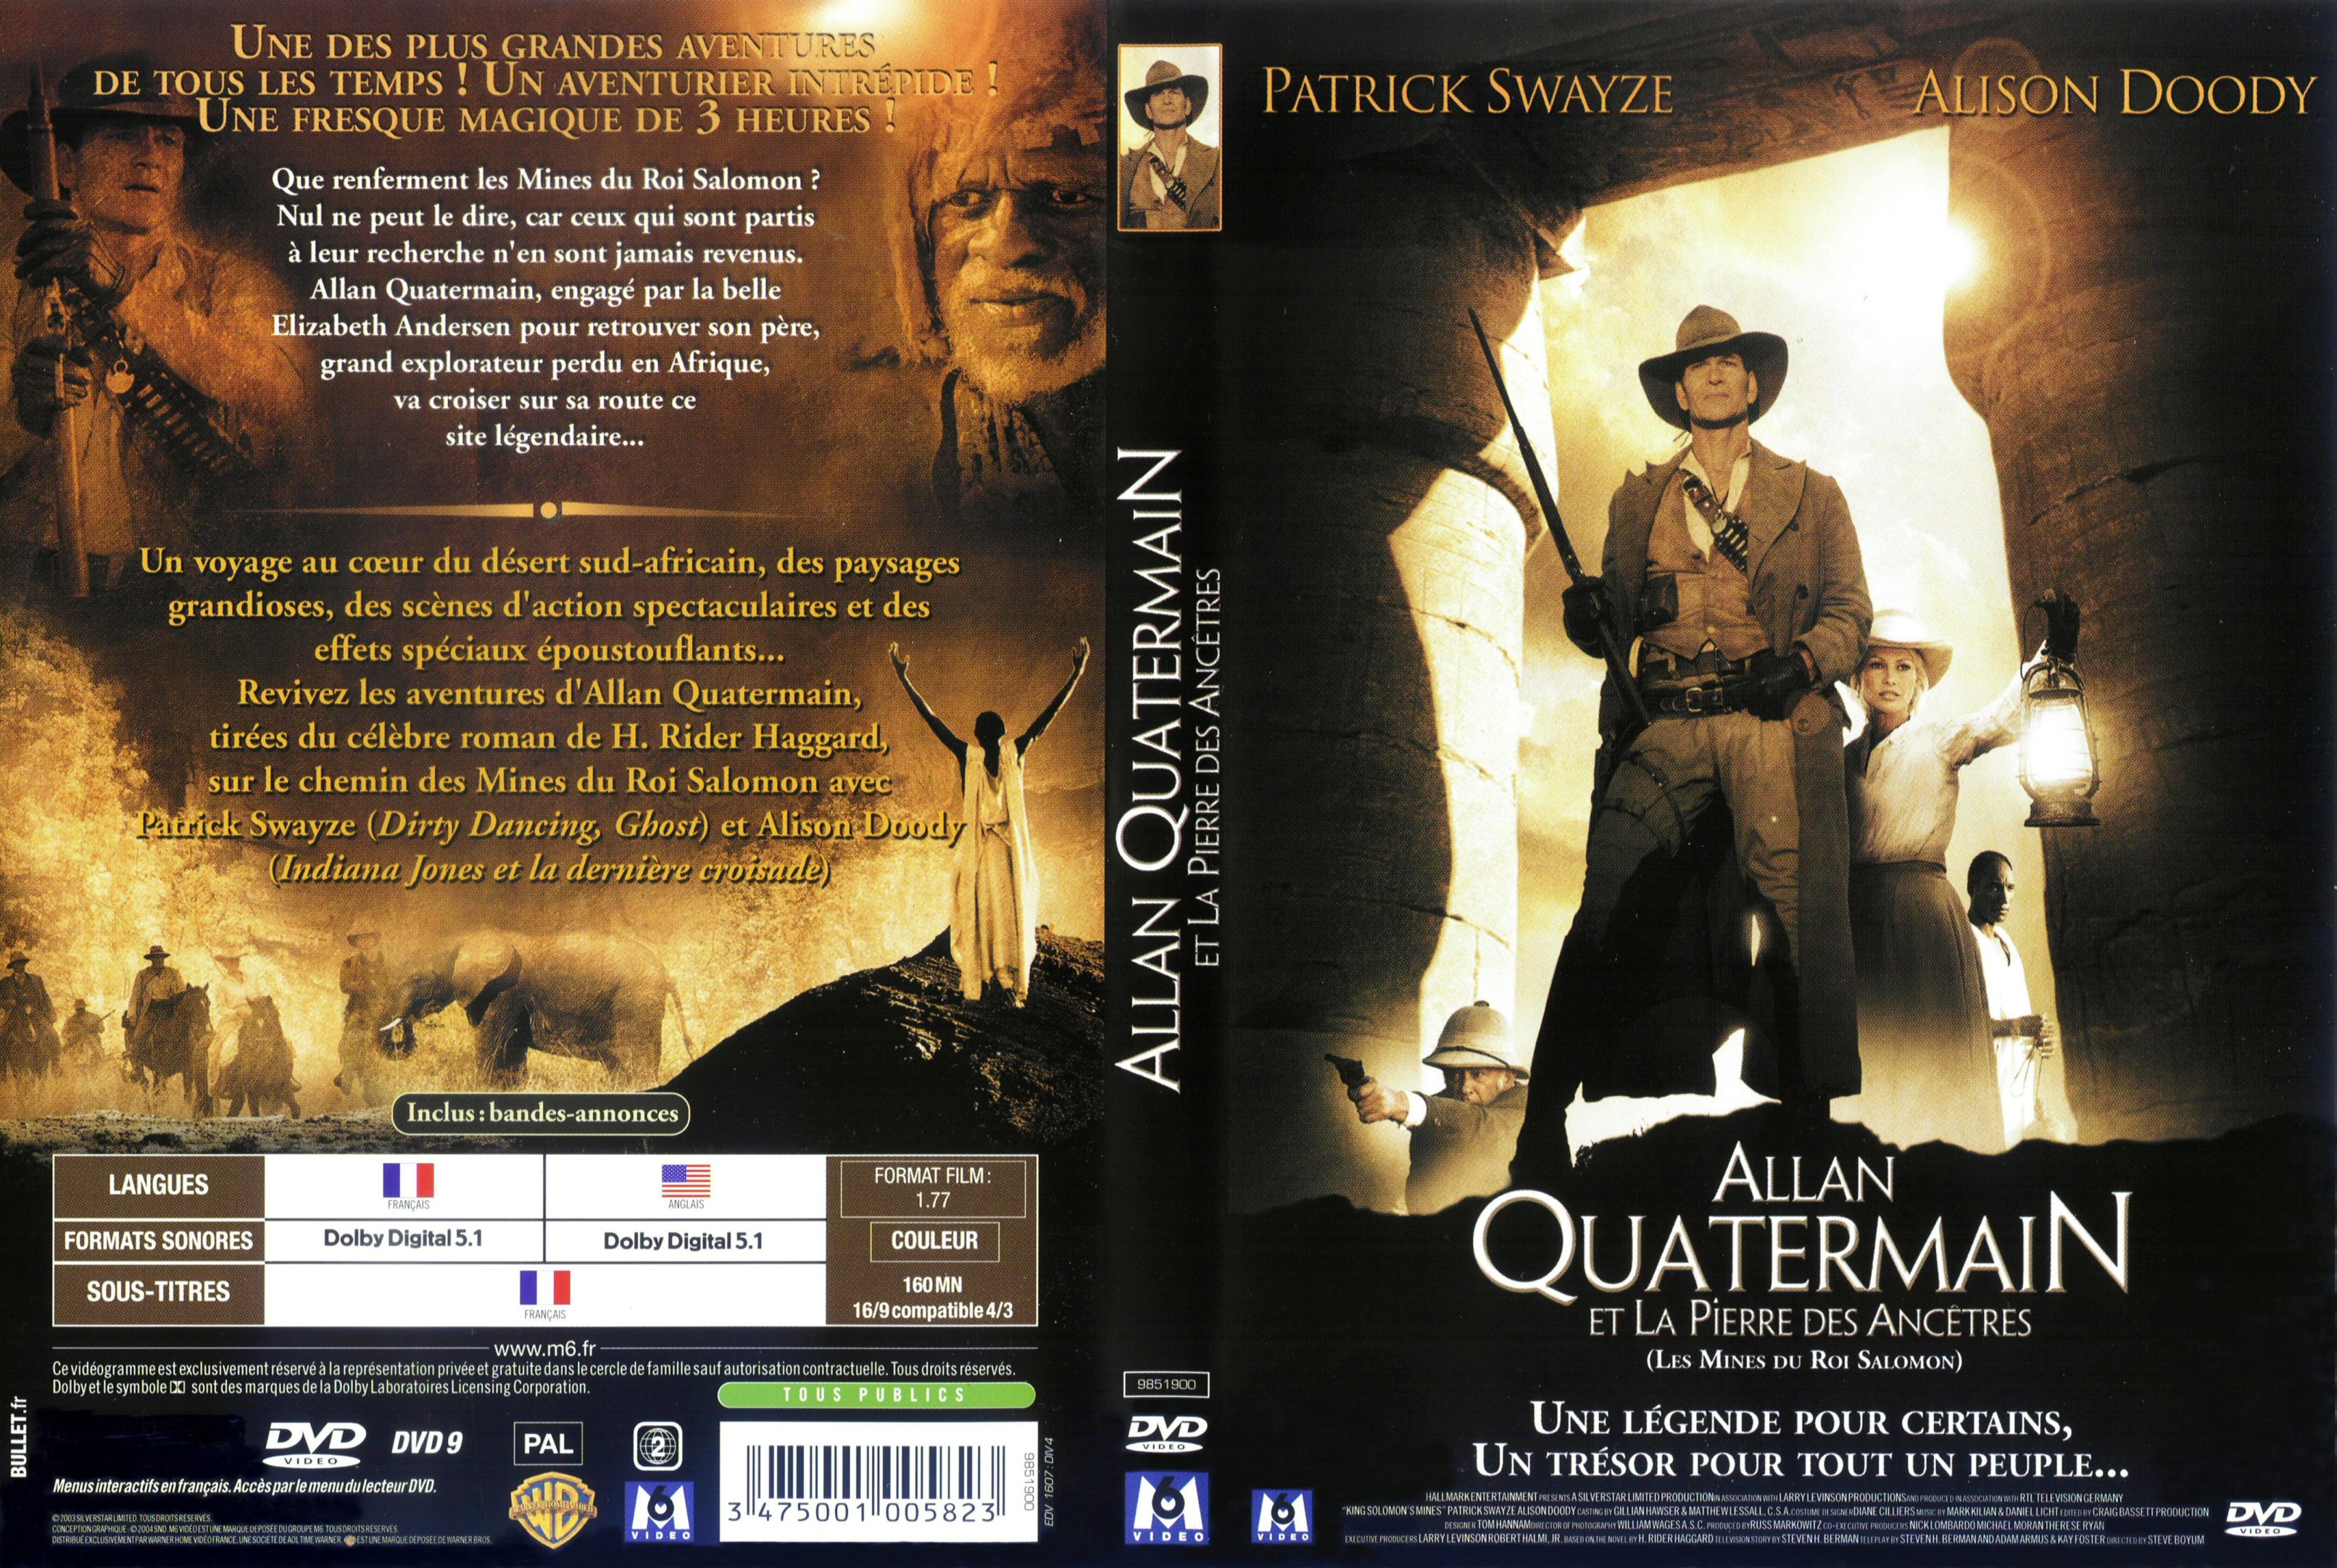 Jaquette DVD Allan Quatermain et la pierre des ancetres